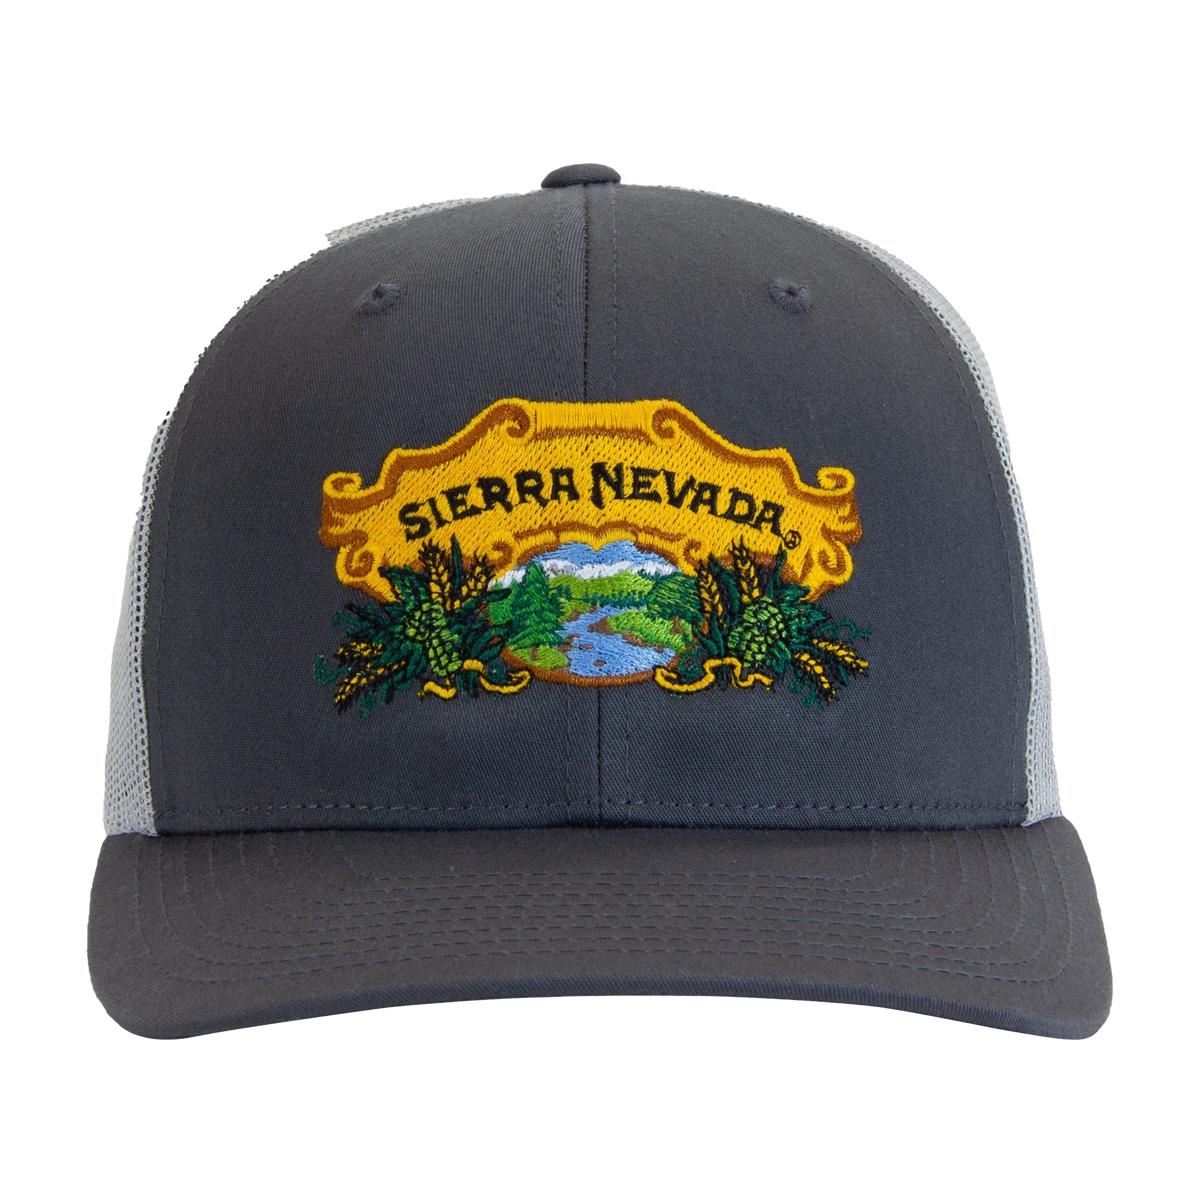 Sierra Nevada Brewing Co. Grey Trucker Hat